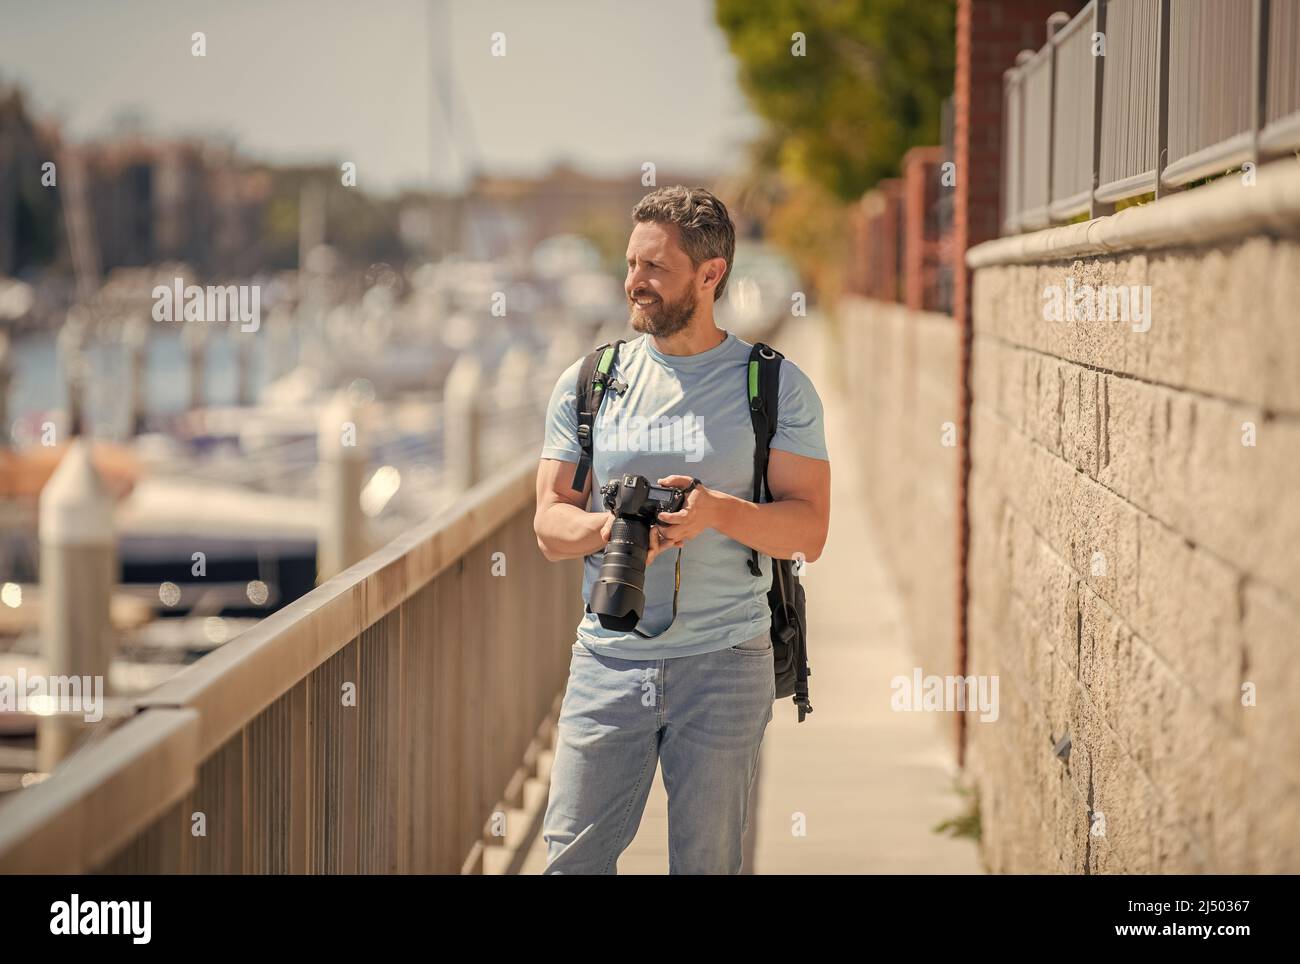 Mann hält die Kamera auf der Promenade. Urlaubsfotografie. Reisefotografie Stockfoto